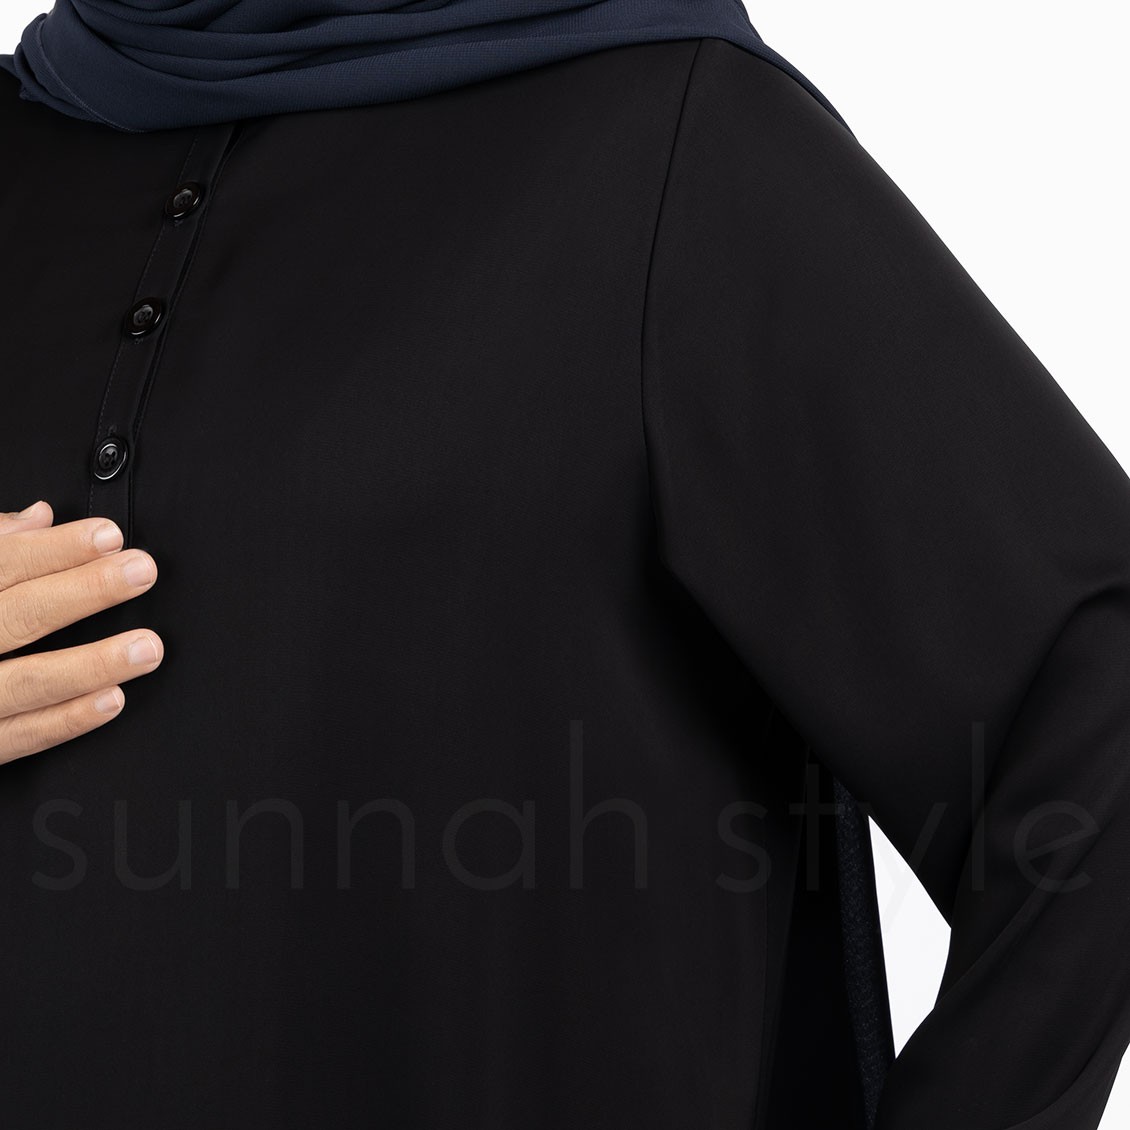 Sunnah Style Avant Abaya Top Black